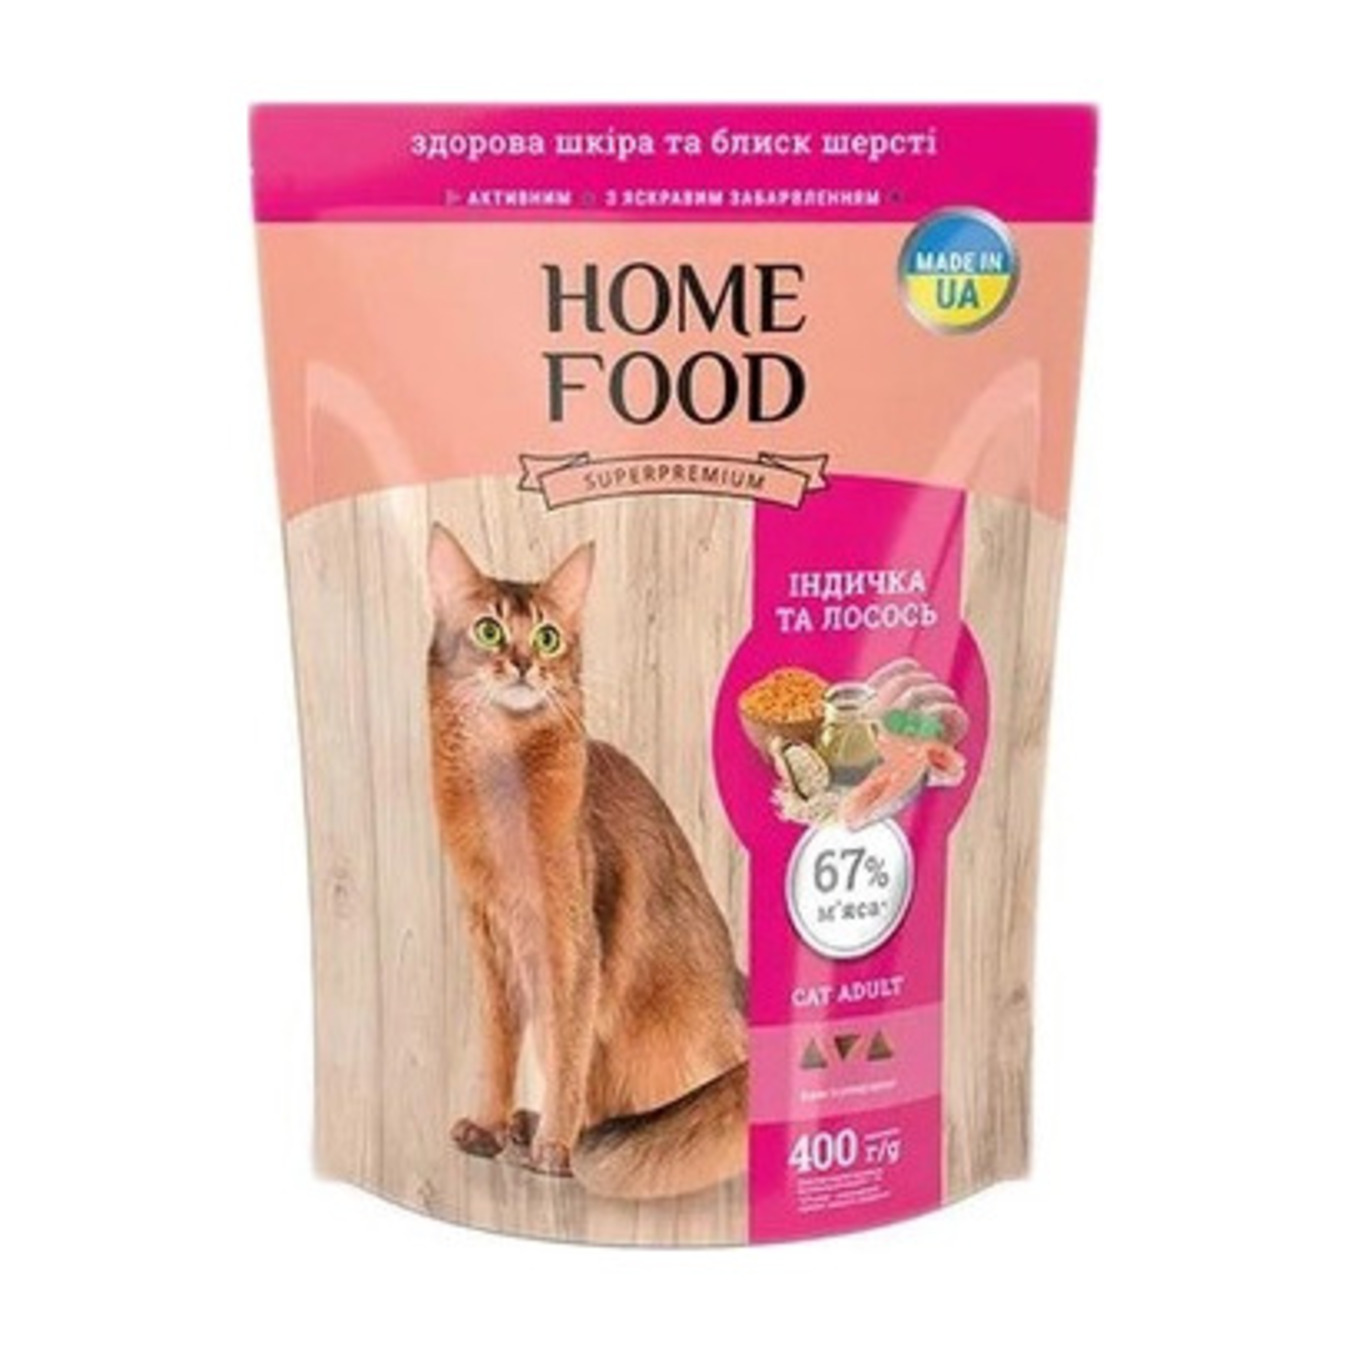 Корм для котів Home Food здорова шкіра та блиск шерсті сухий Індичка та лосось 400г